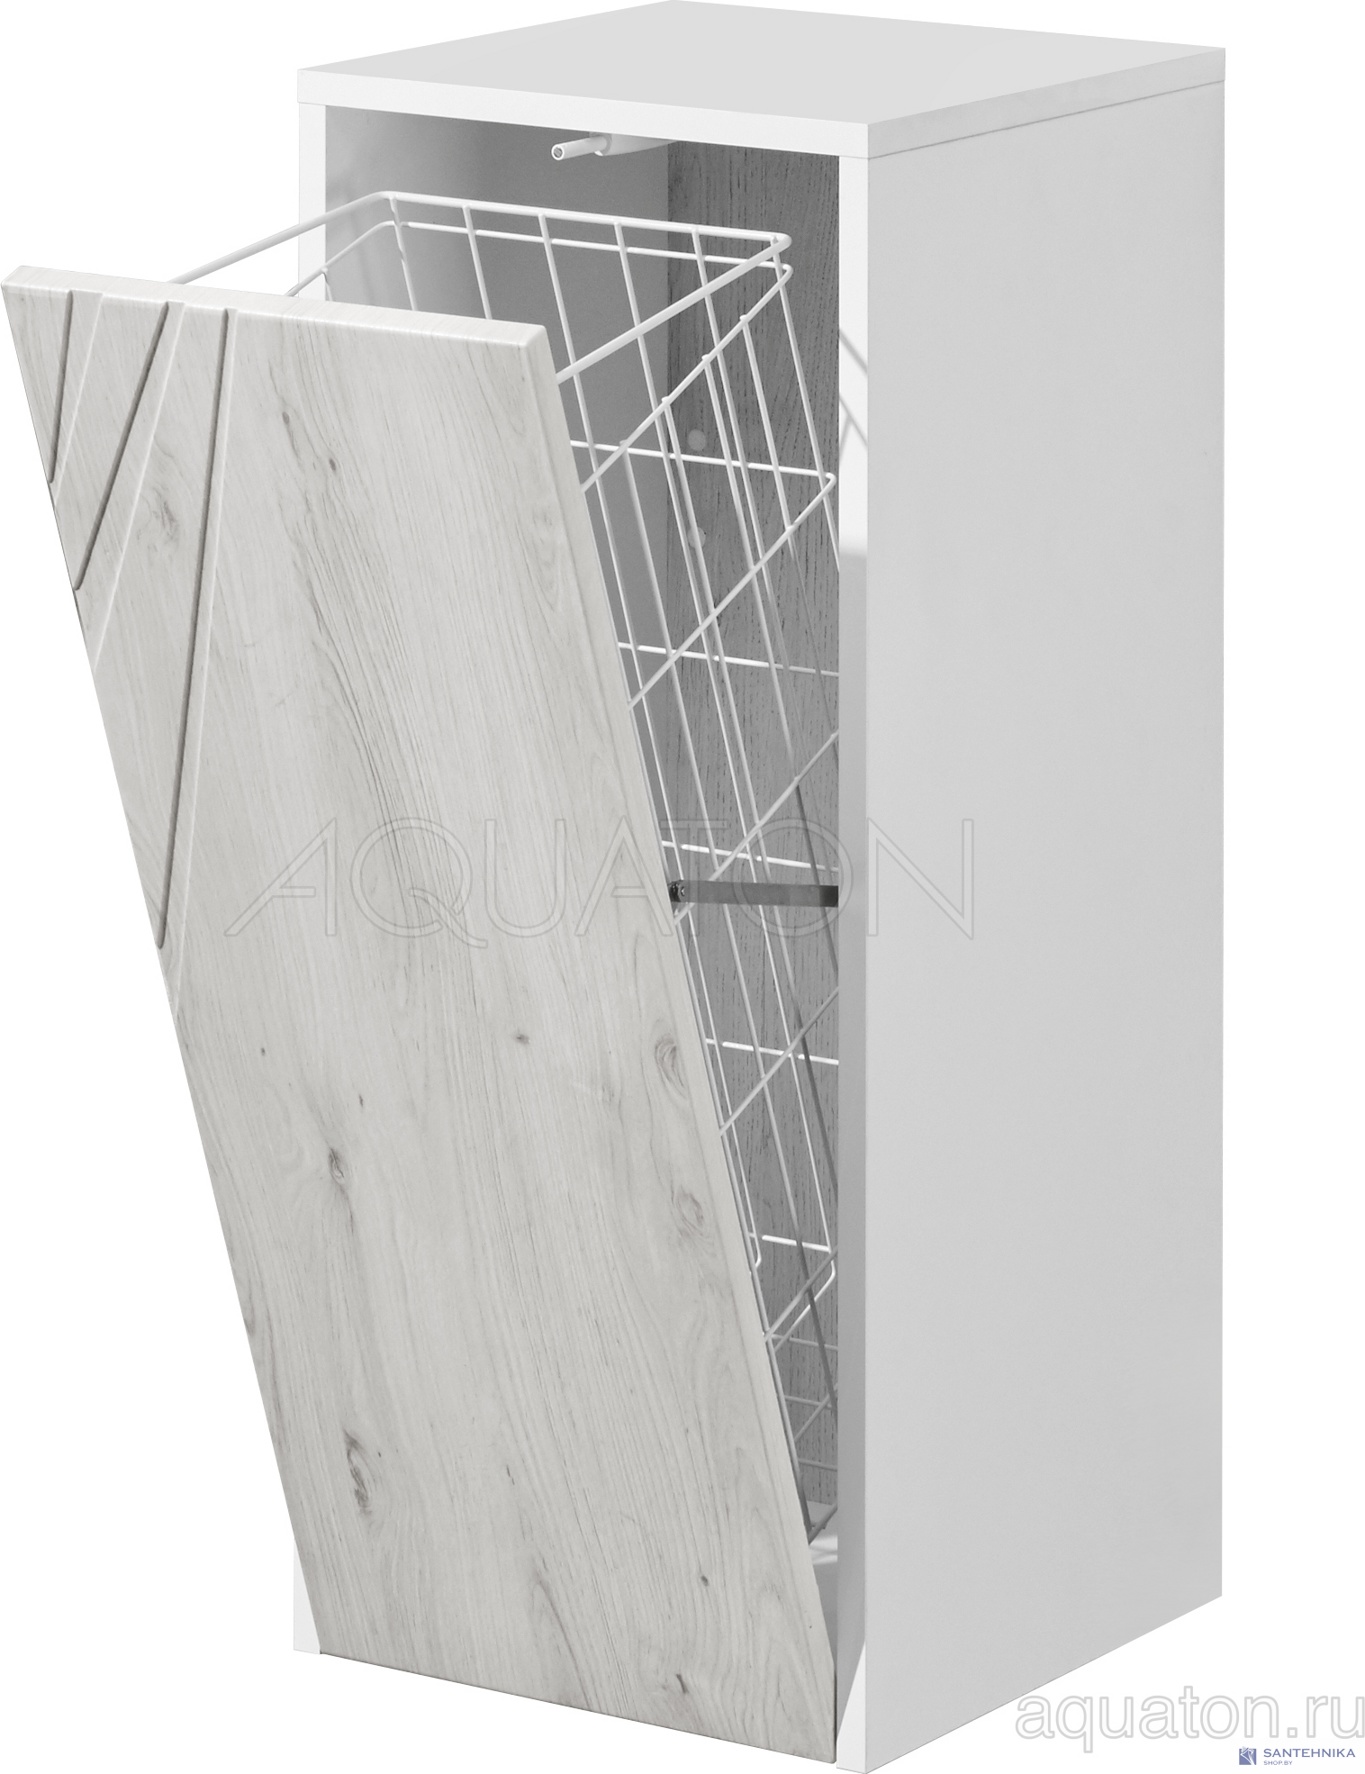 Шкафчик Aquaton Сакура с корзиной ольха наварра, белый глянец 1A220703SKW80